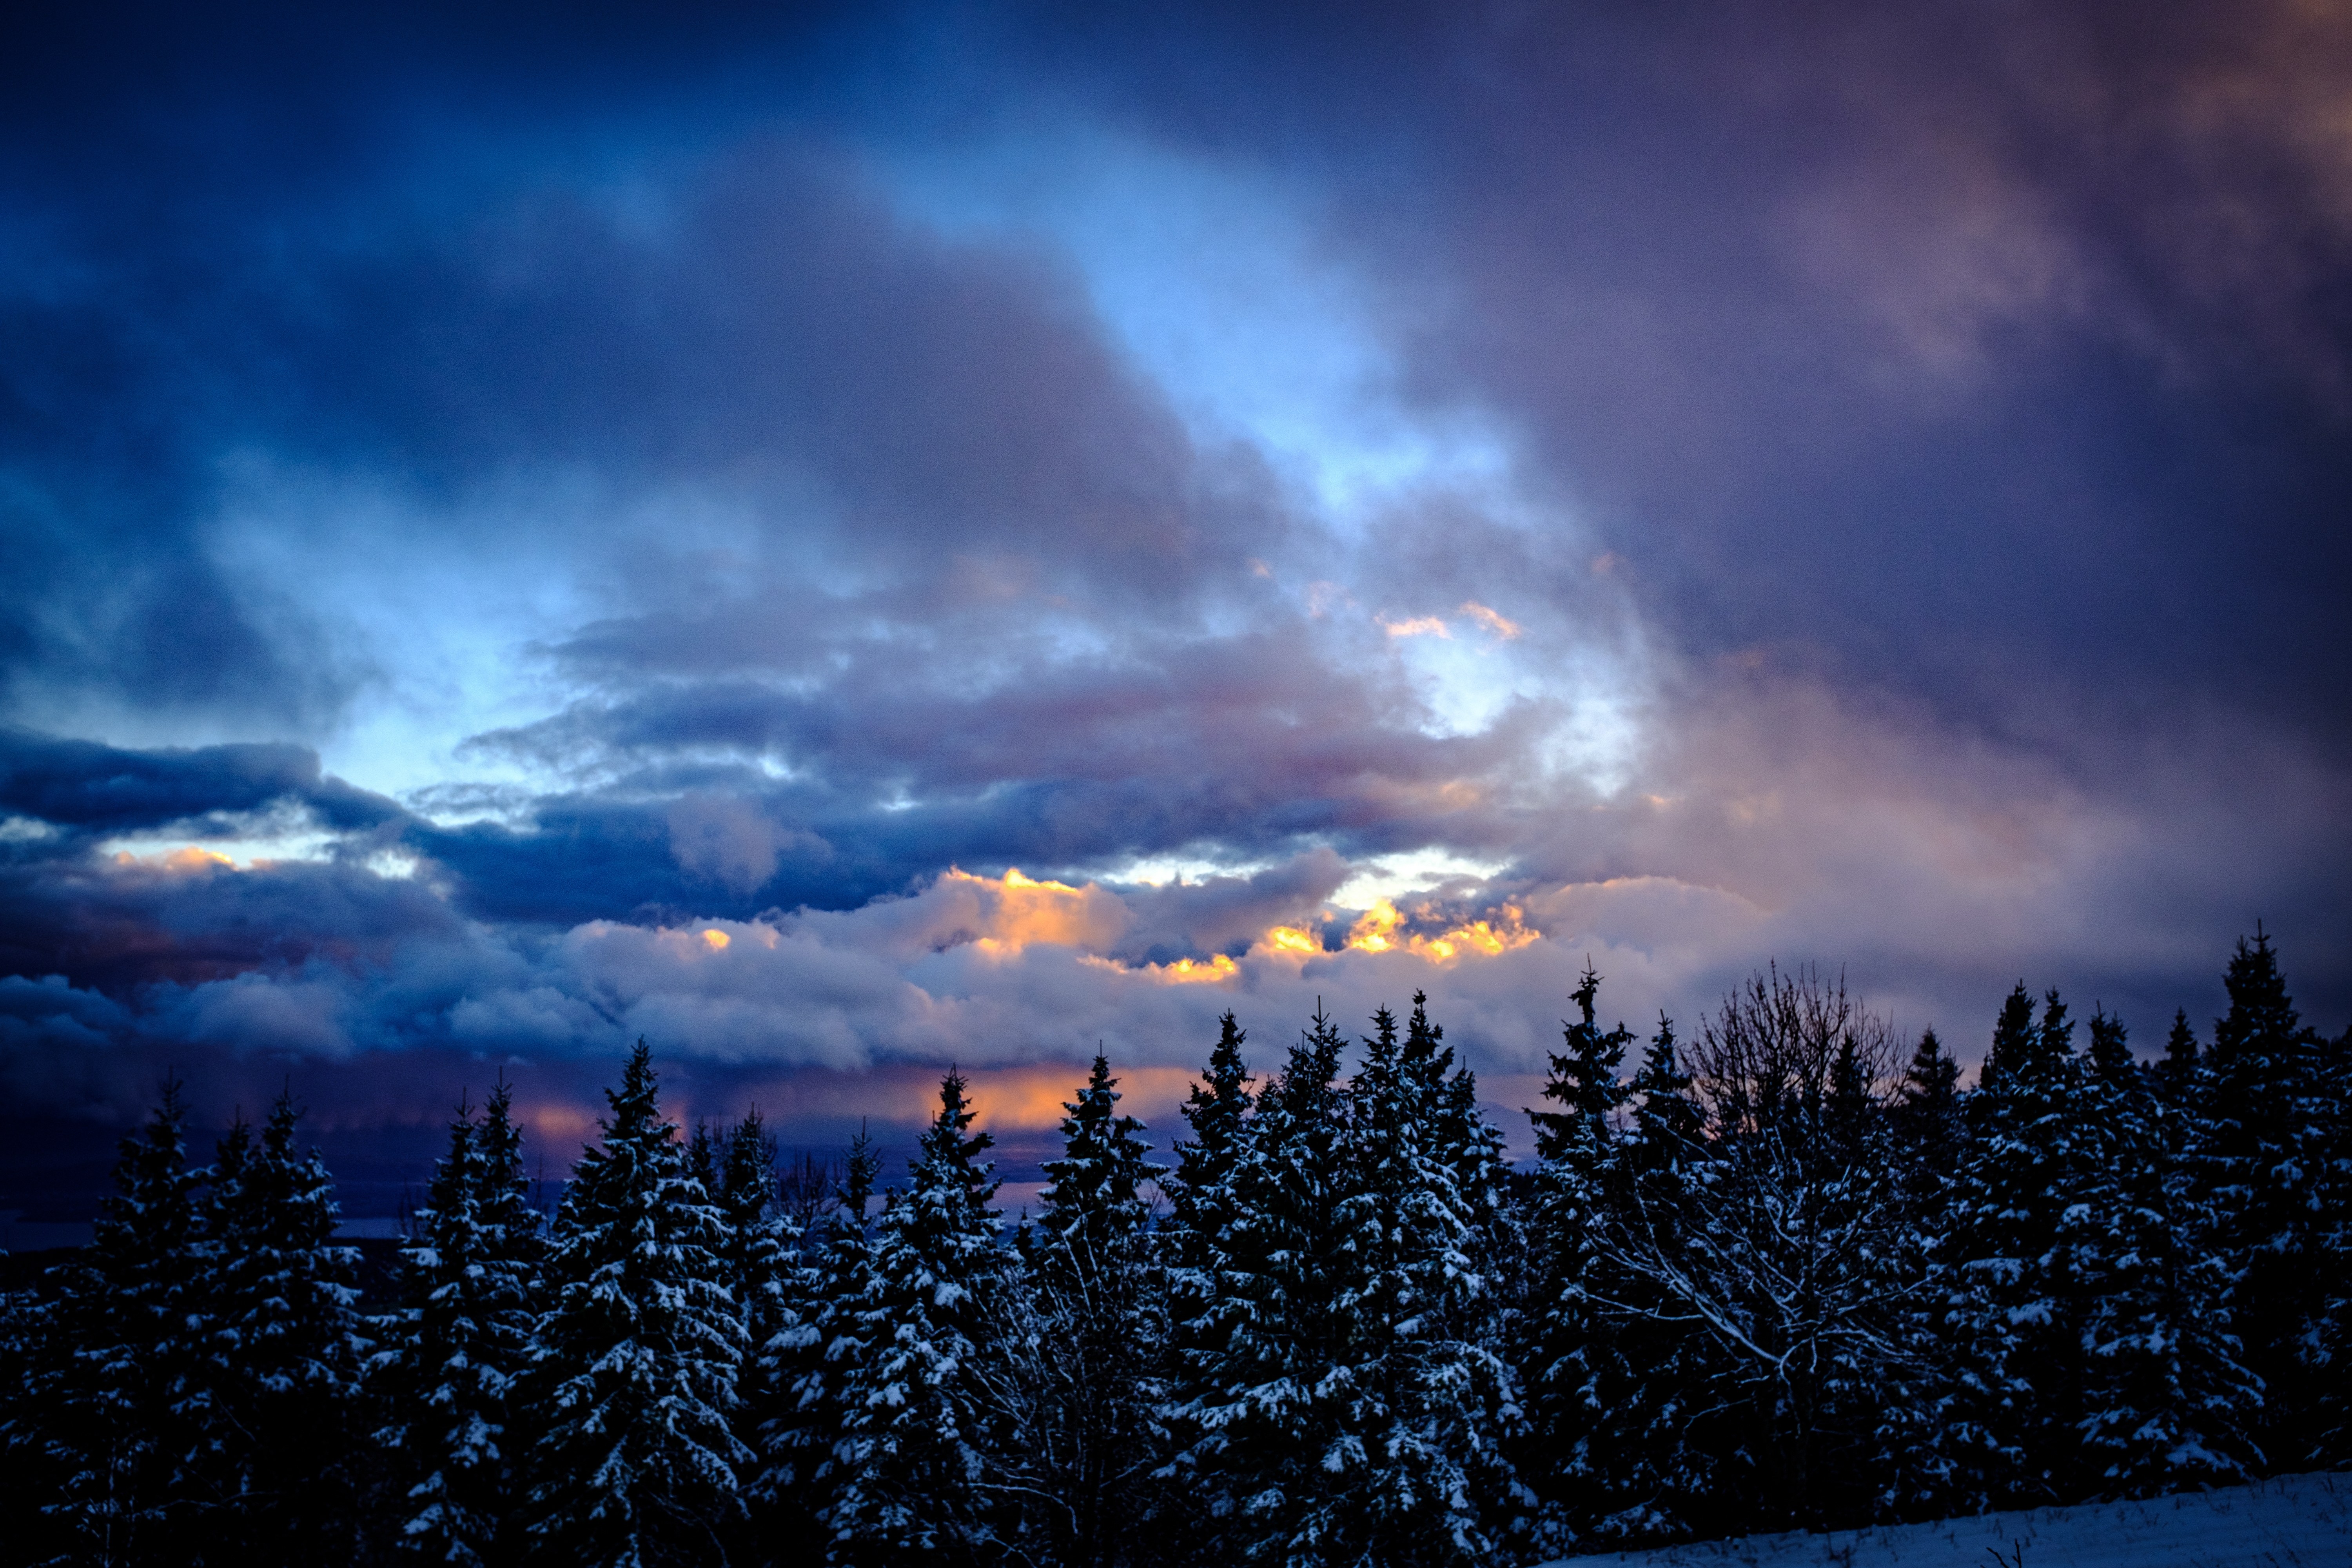 HD wallpaper, Snowy Trees, Dusk, Cloudy Sky, Scenic, 5K, Winter